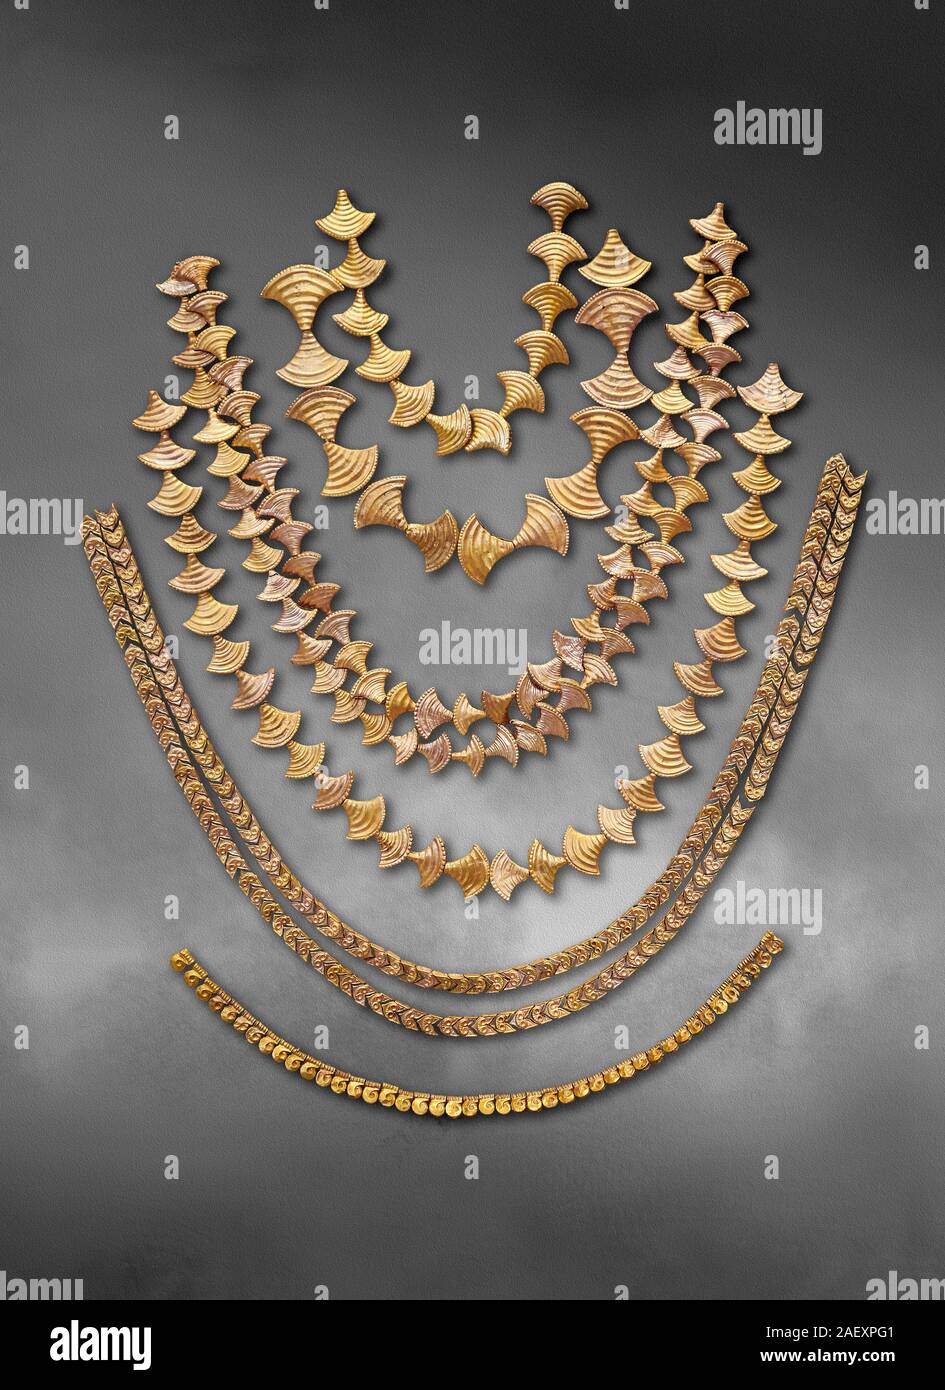 Colliers d'or de la mycénienne Mycènes chamber tombs, la Grèce. Musée  National Archéologique d'Athènes. Art fond gris de haut en bas Photo Stock  - Alamy